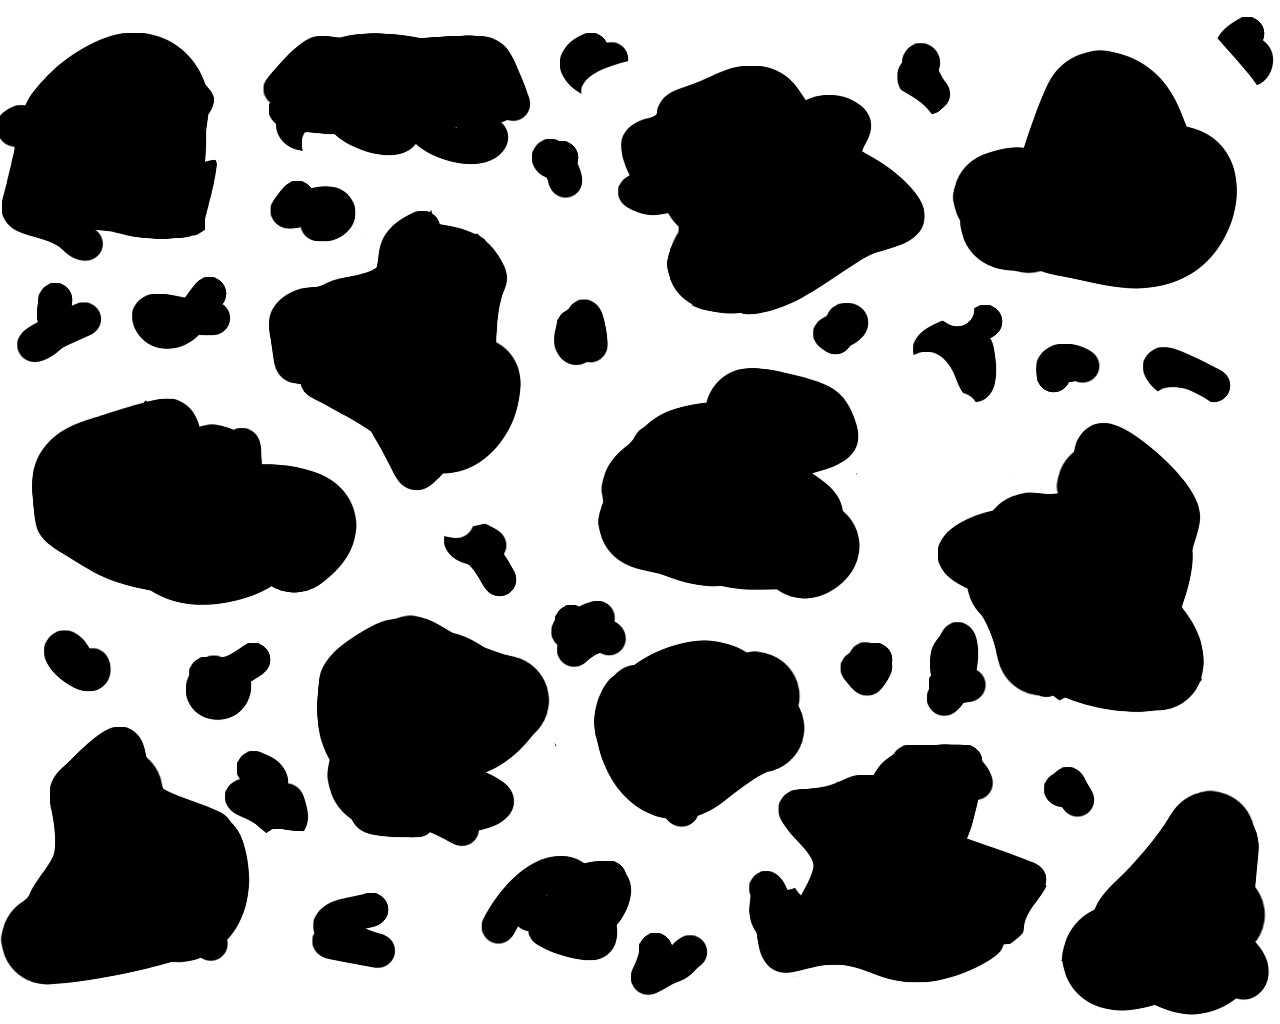 Cow Print Wallpaper 1